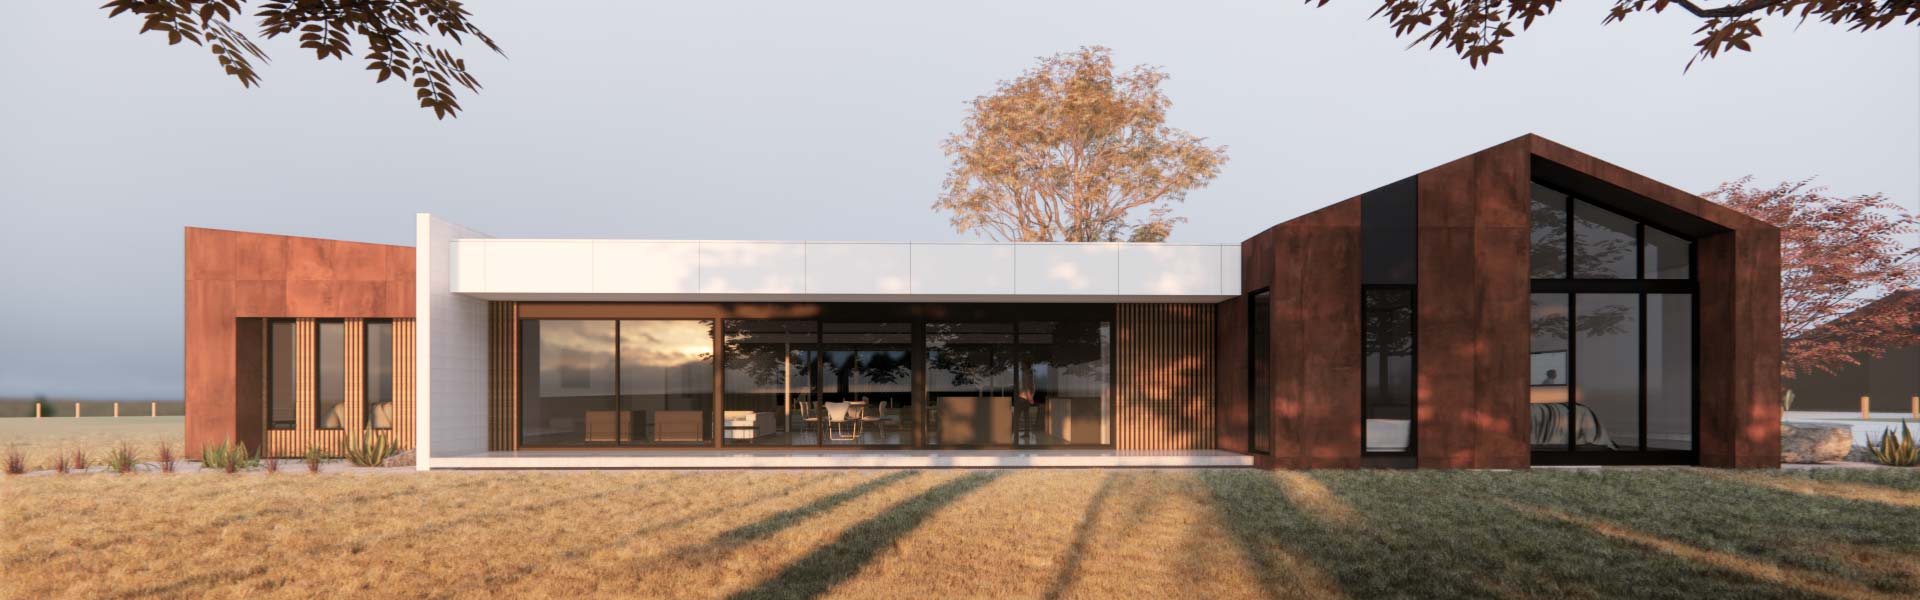 Green Valley Farm - Contemporary Home Design